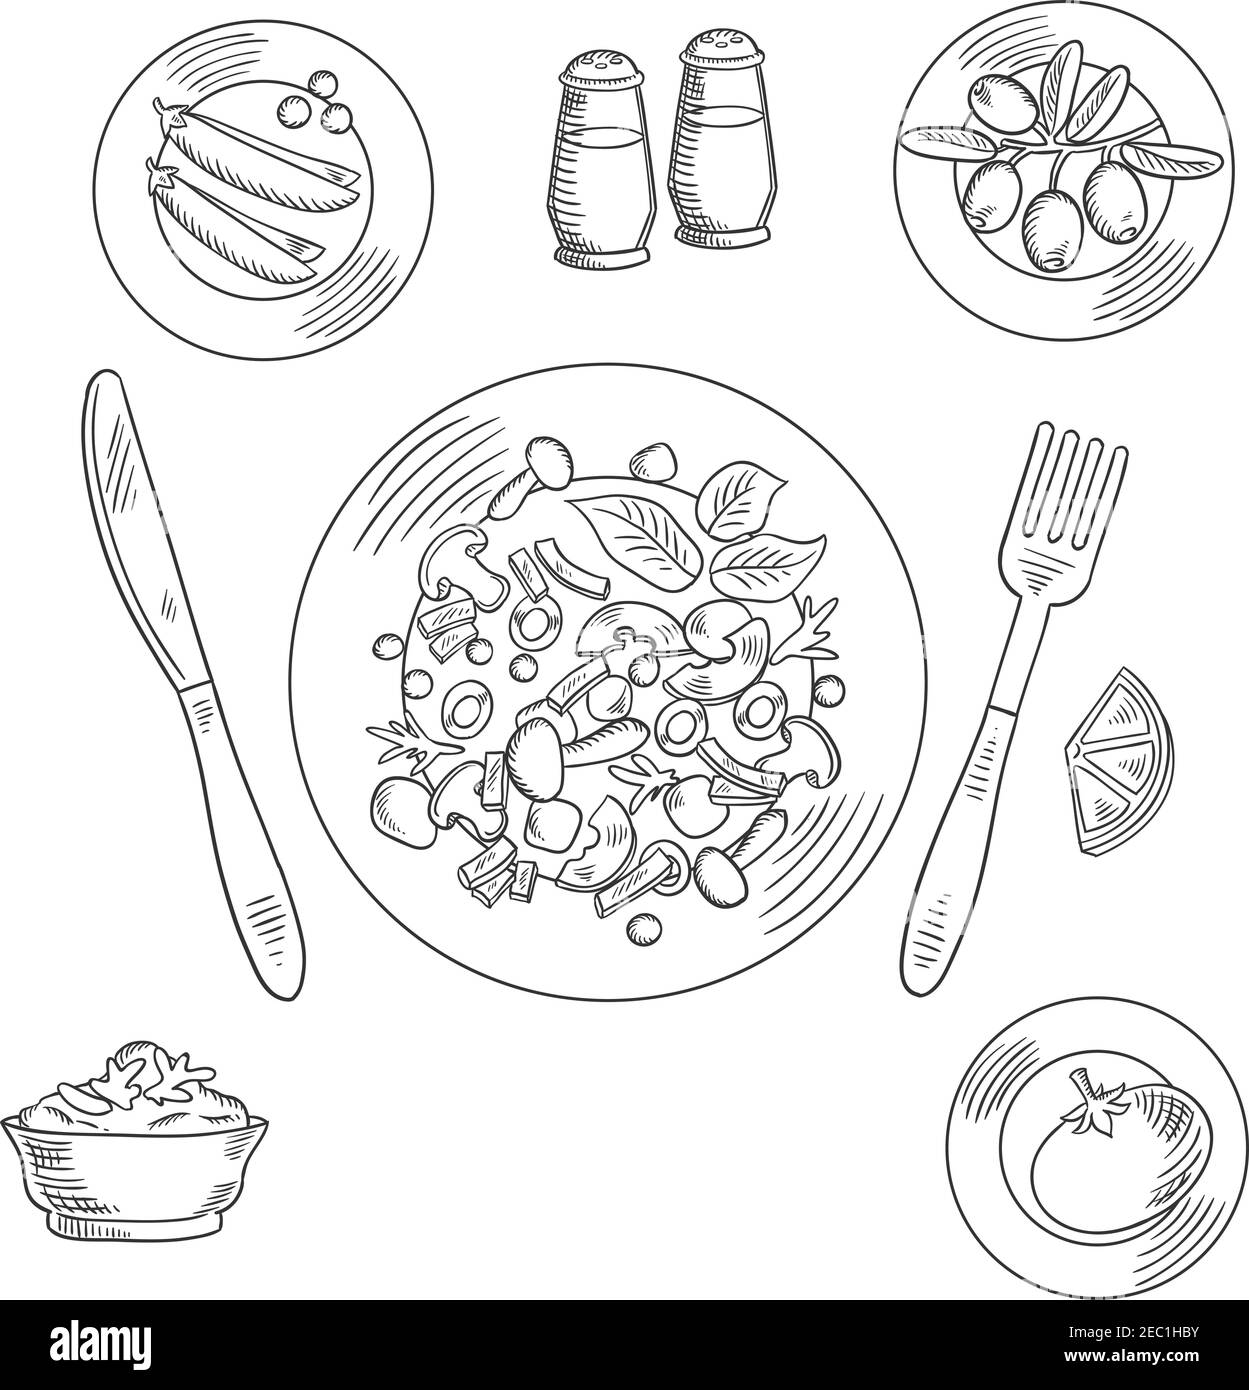 Vegetarisches Mittagessen mit Pilzen, Avocado und Olivensalat, Dressing mit Zitronensaft und würzigen Kräutern, Schüssel mit Avocado Guacamole, Erbse, Oliven und Tomaten Stock Vektor